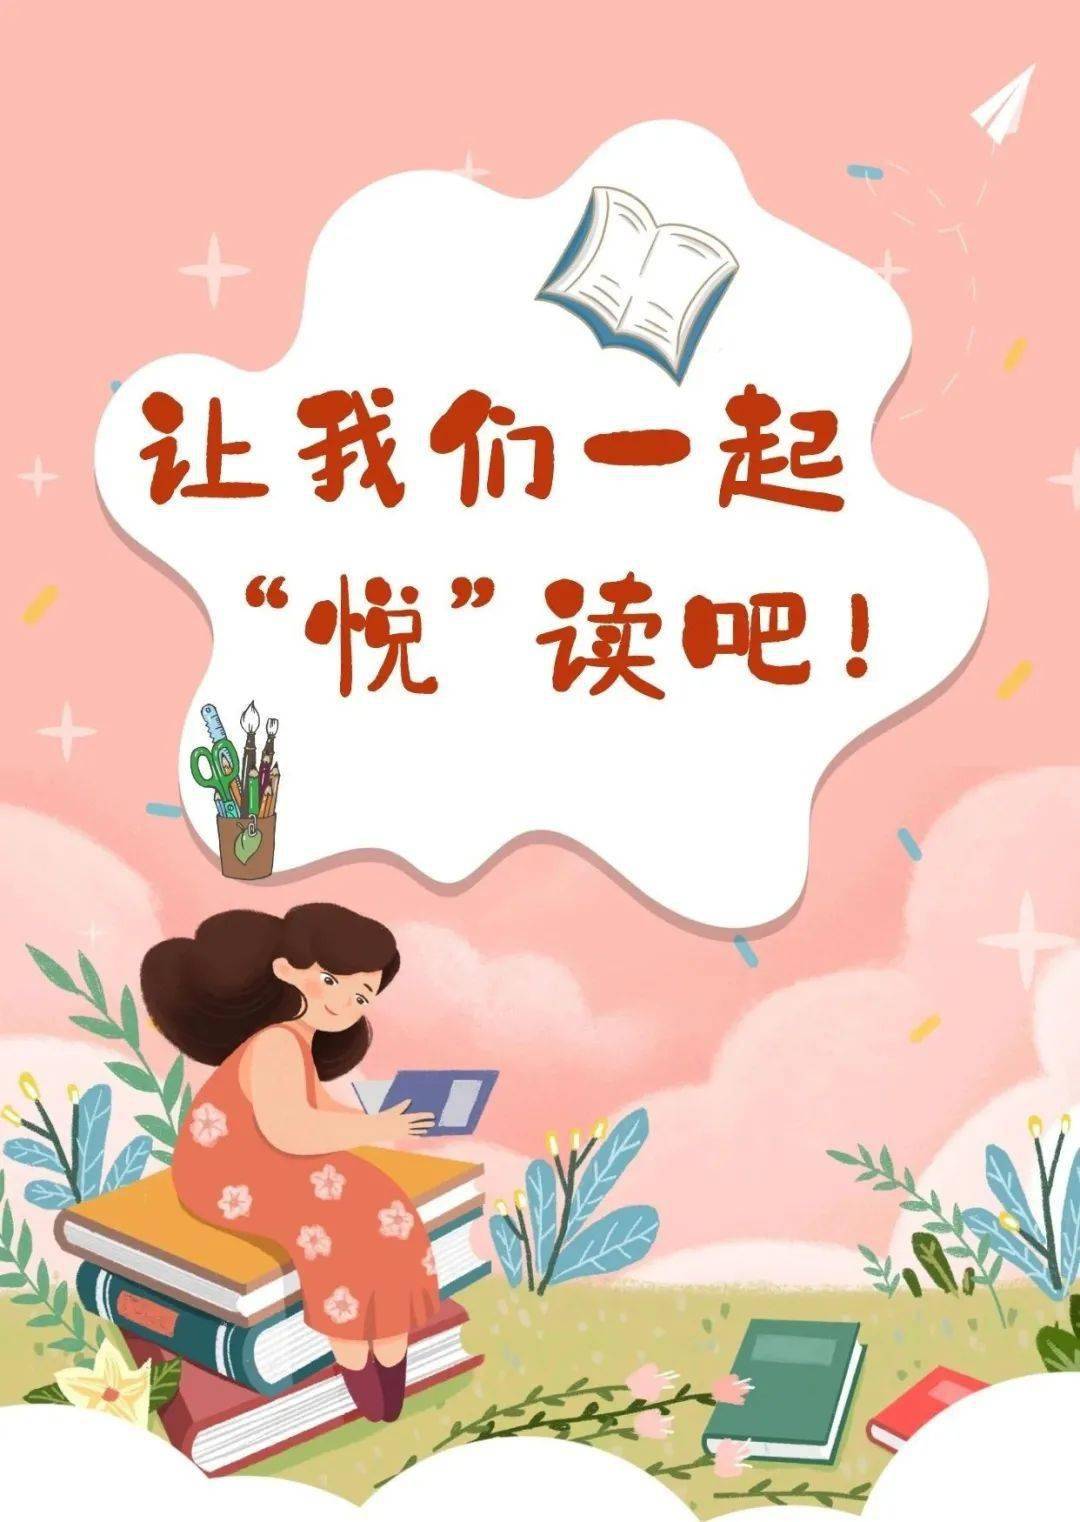 让我们一起悦读吧记南京市银城小学2020年度读书节一二年级活动